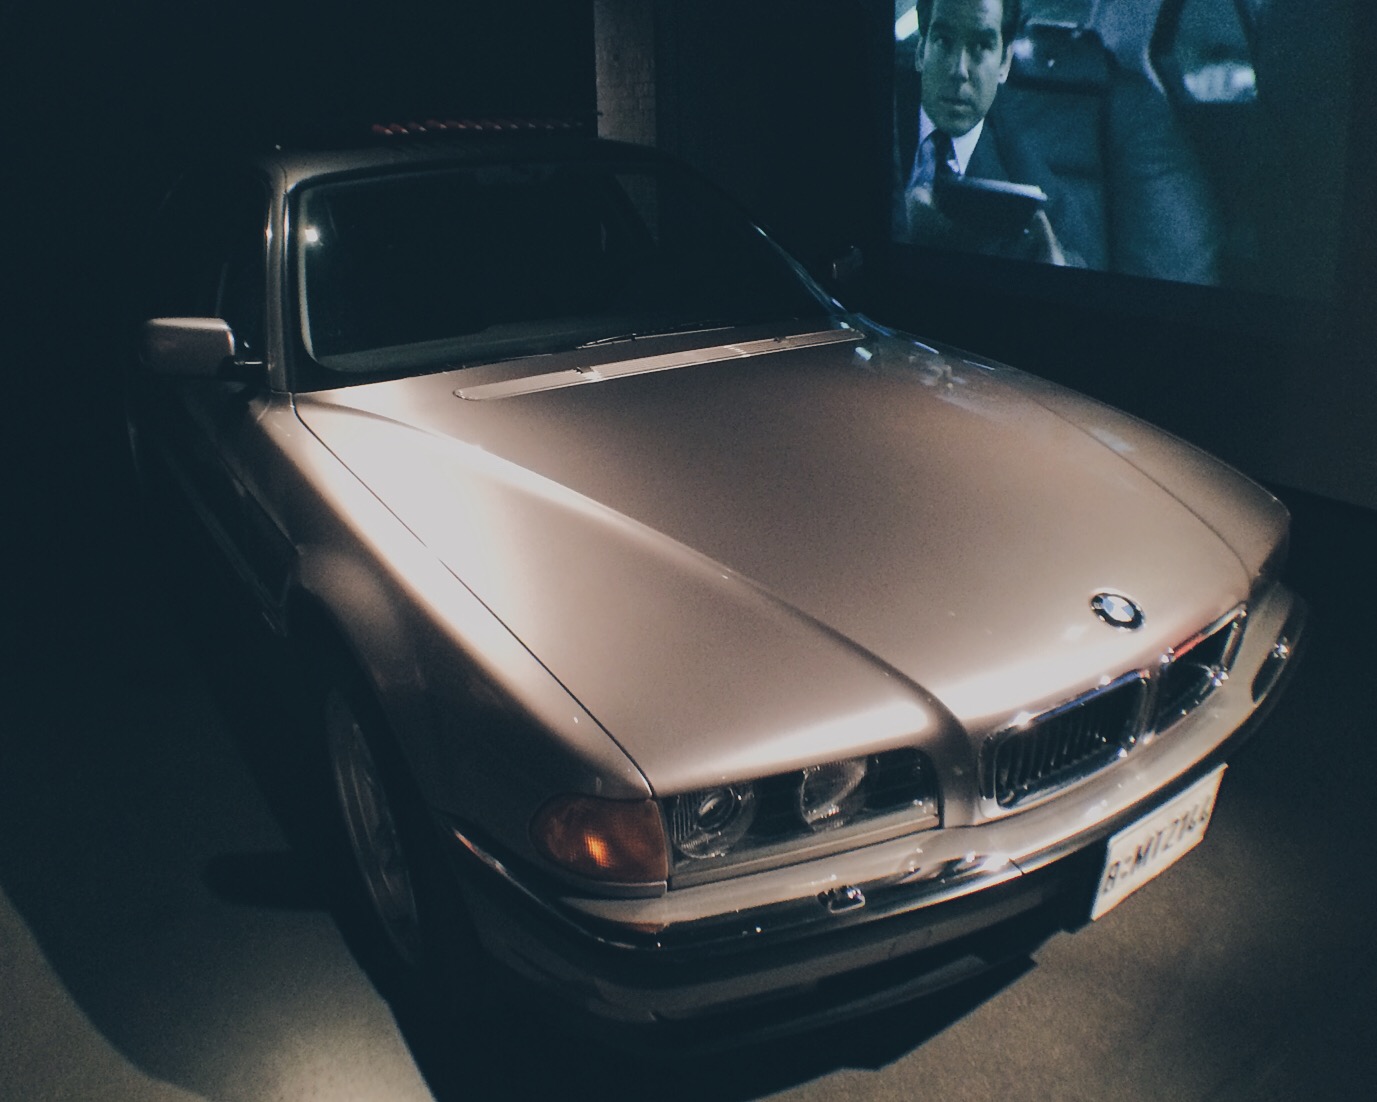 BMW 750iL: El auto súper equipado que Pierce Brosnan manejó en "Tomorrow Never Dies" (1997). Foto: Marco Gómez